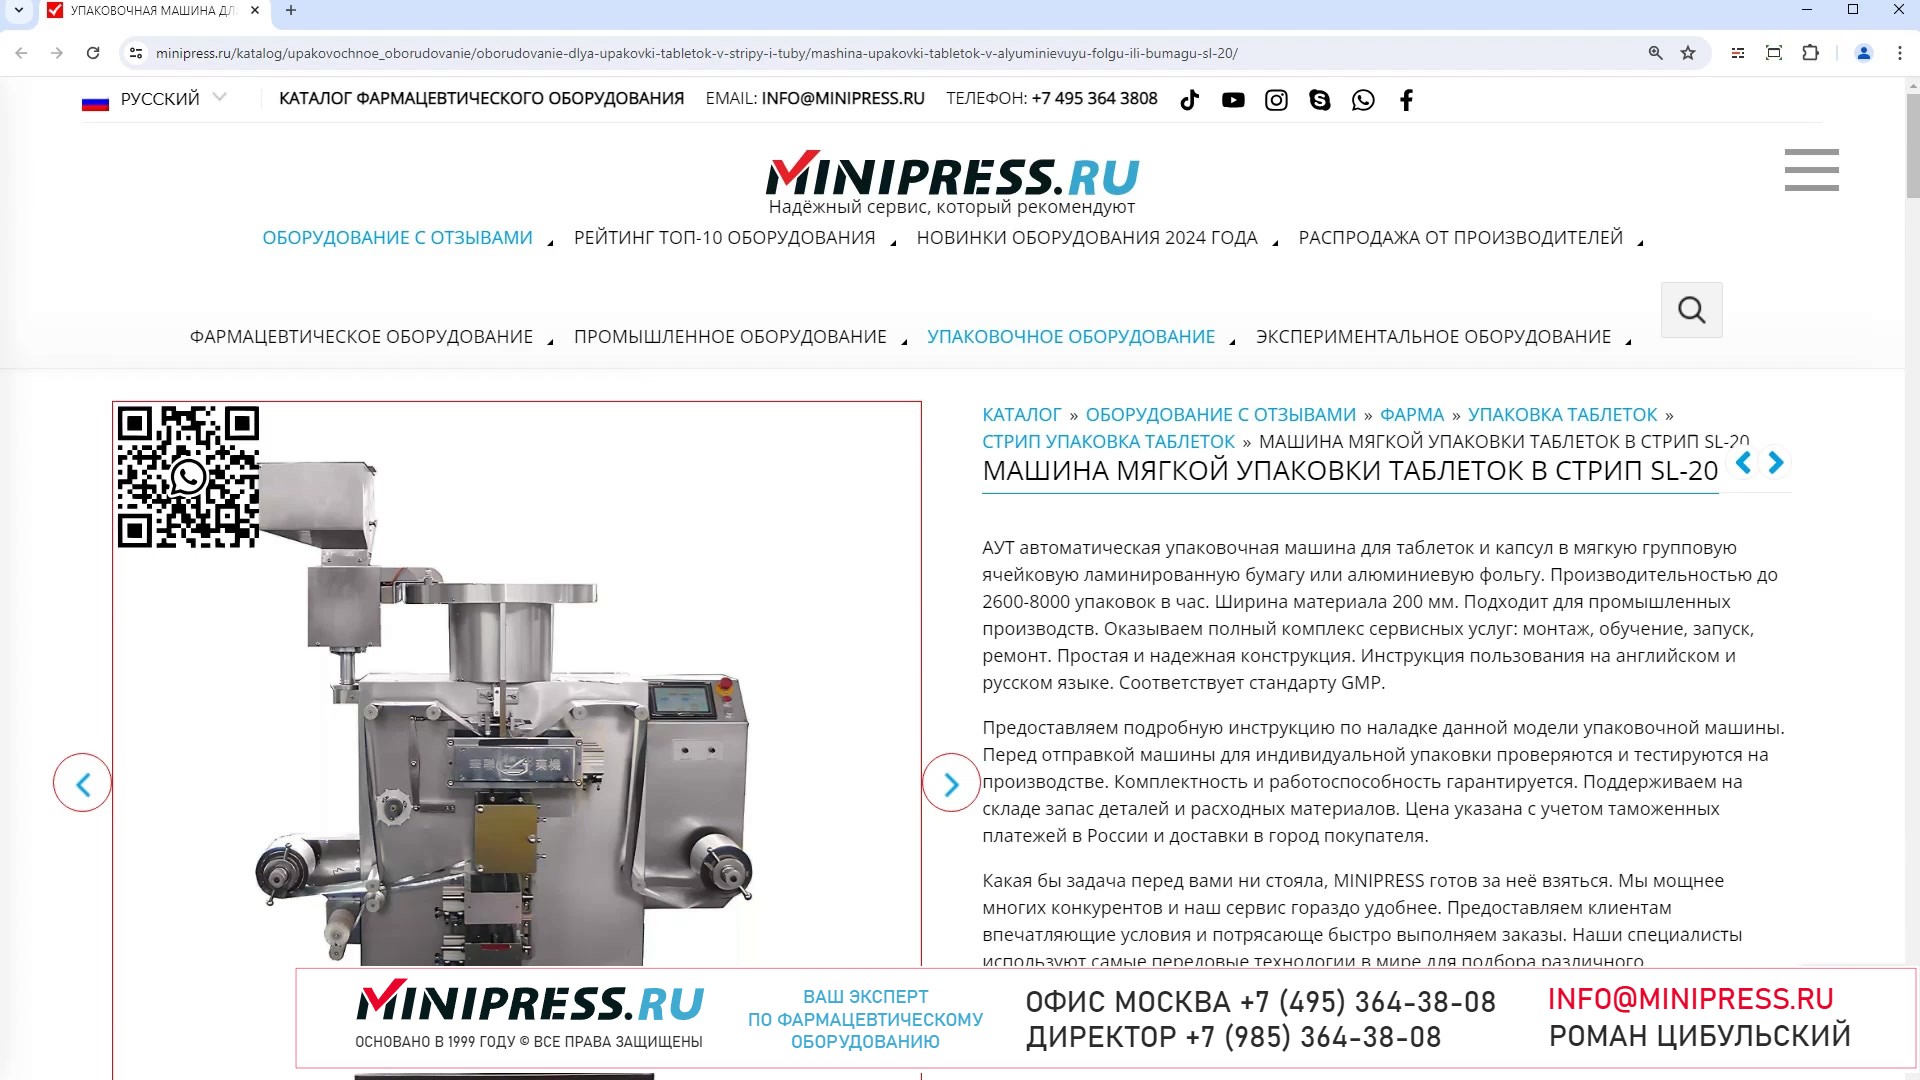 Minipress.ru Машина мягкой упаковки таблеток в стрип SL-20